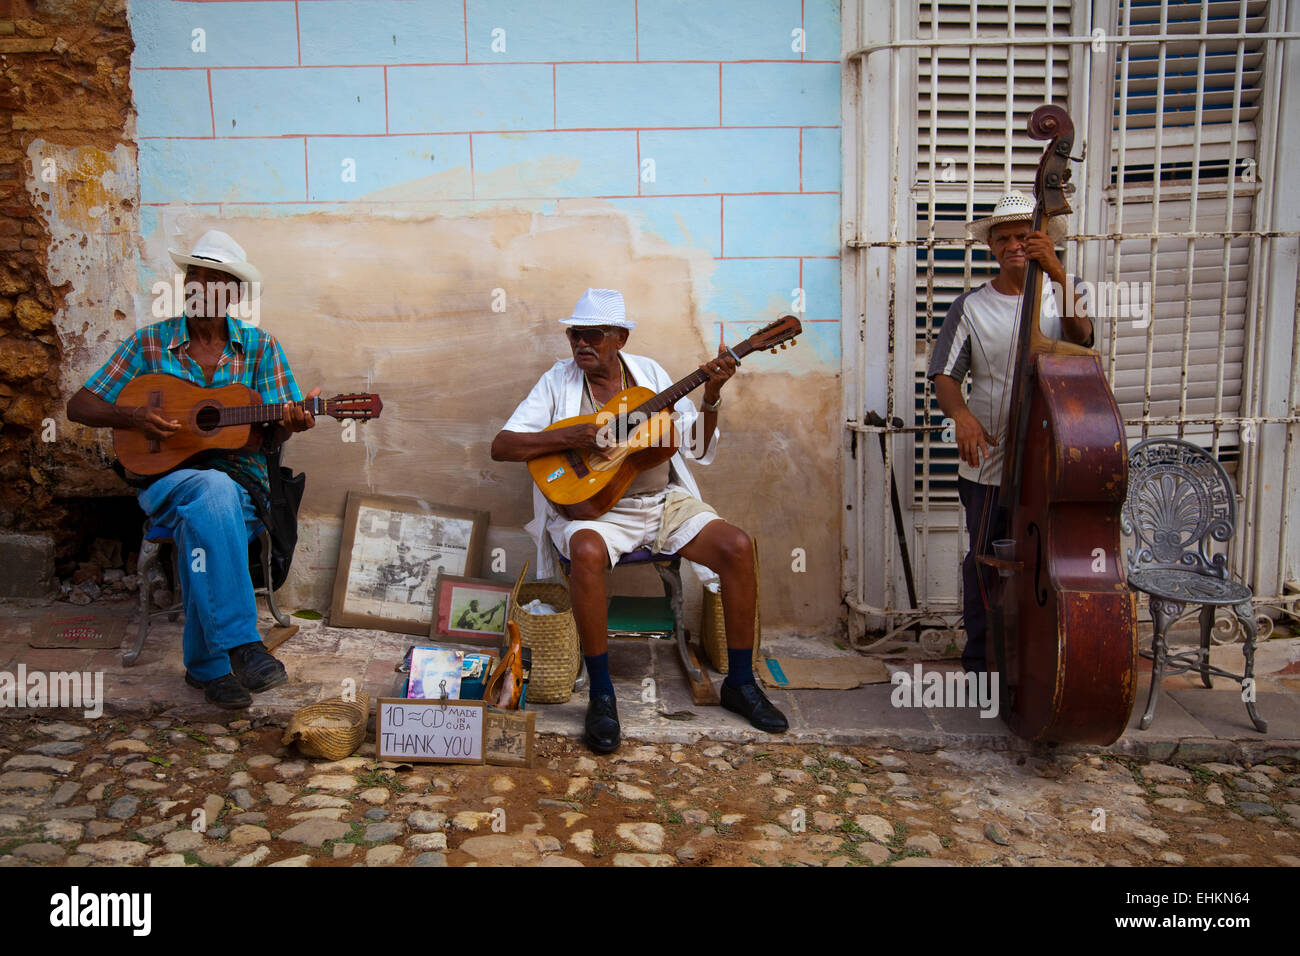 Des musiciens jouent dans les rues de Trinidad, Cuba Banque D'Images